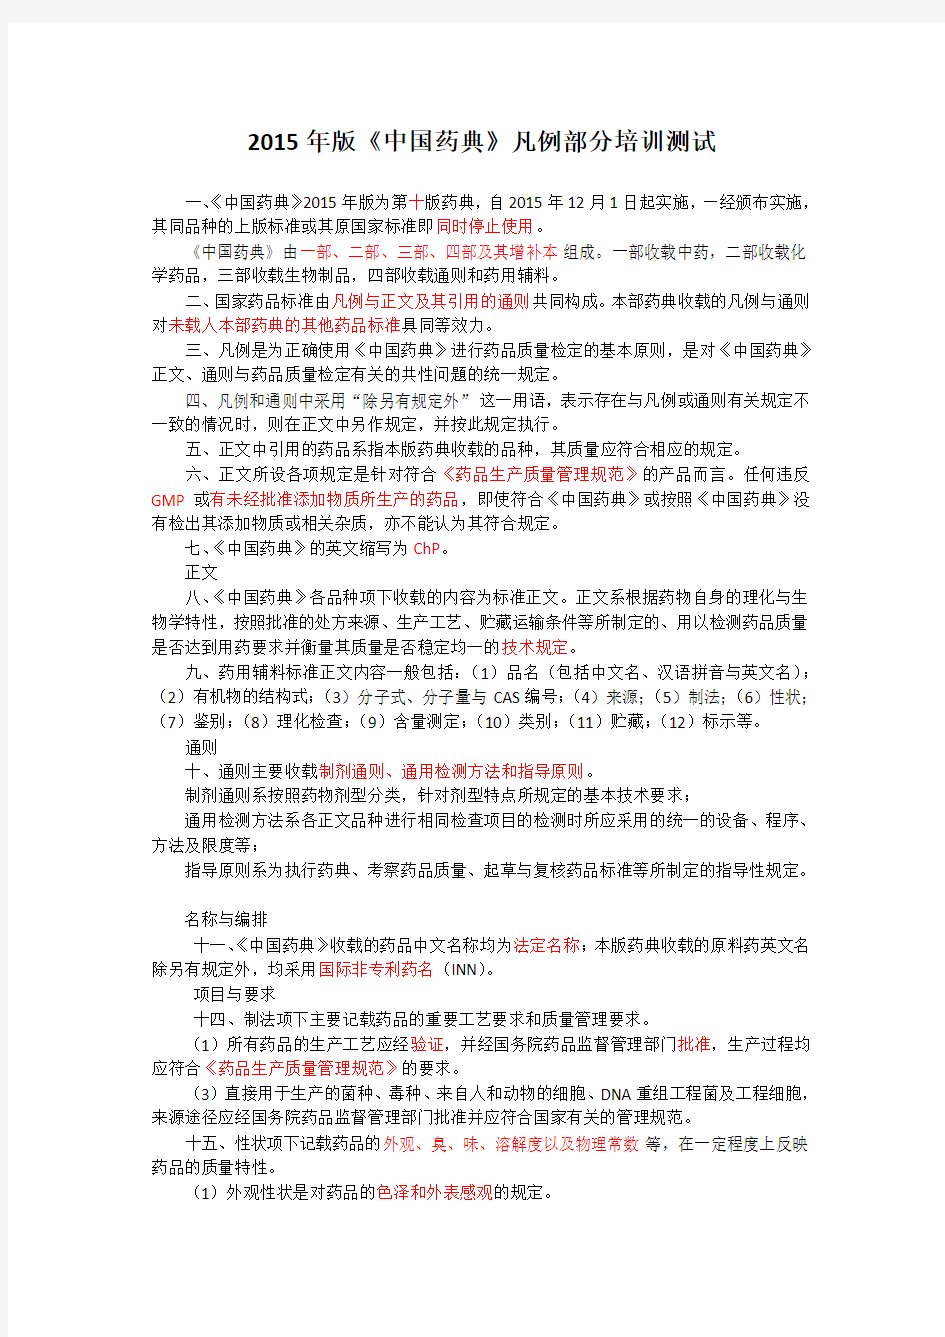 2015年版《中国药典》凡例部分培训测试